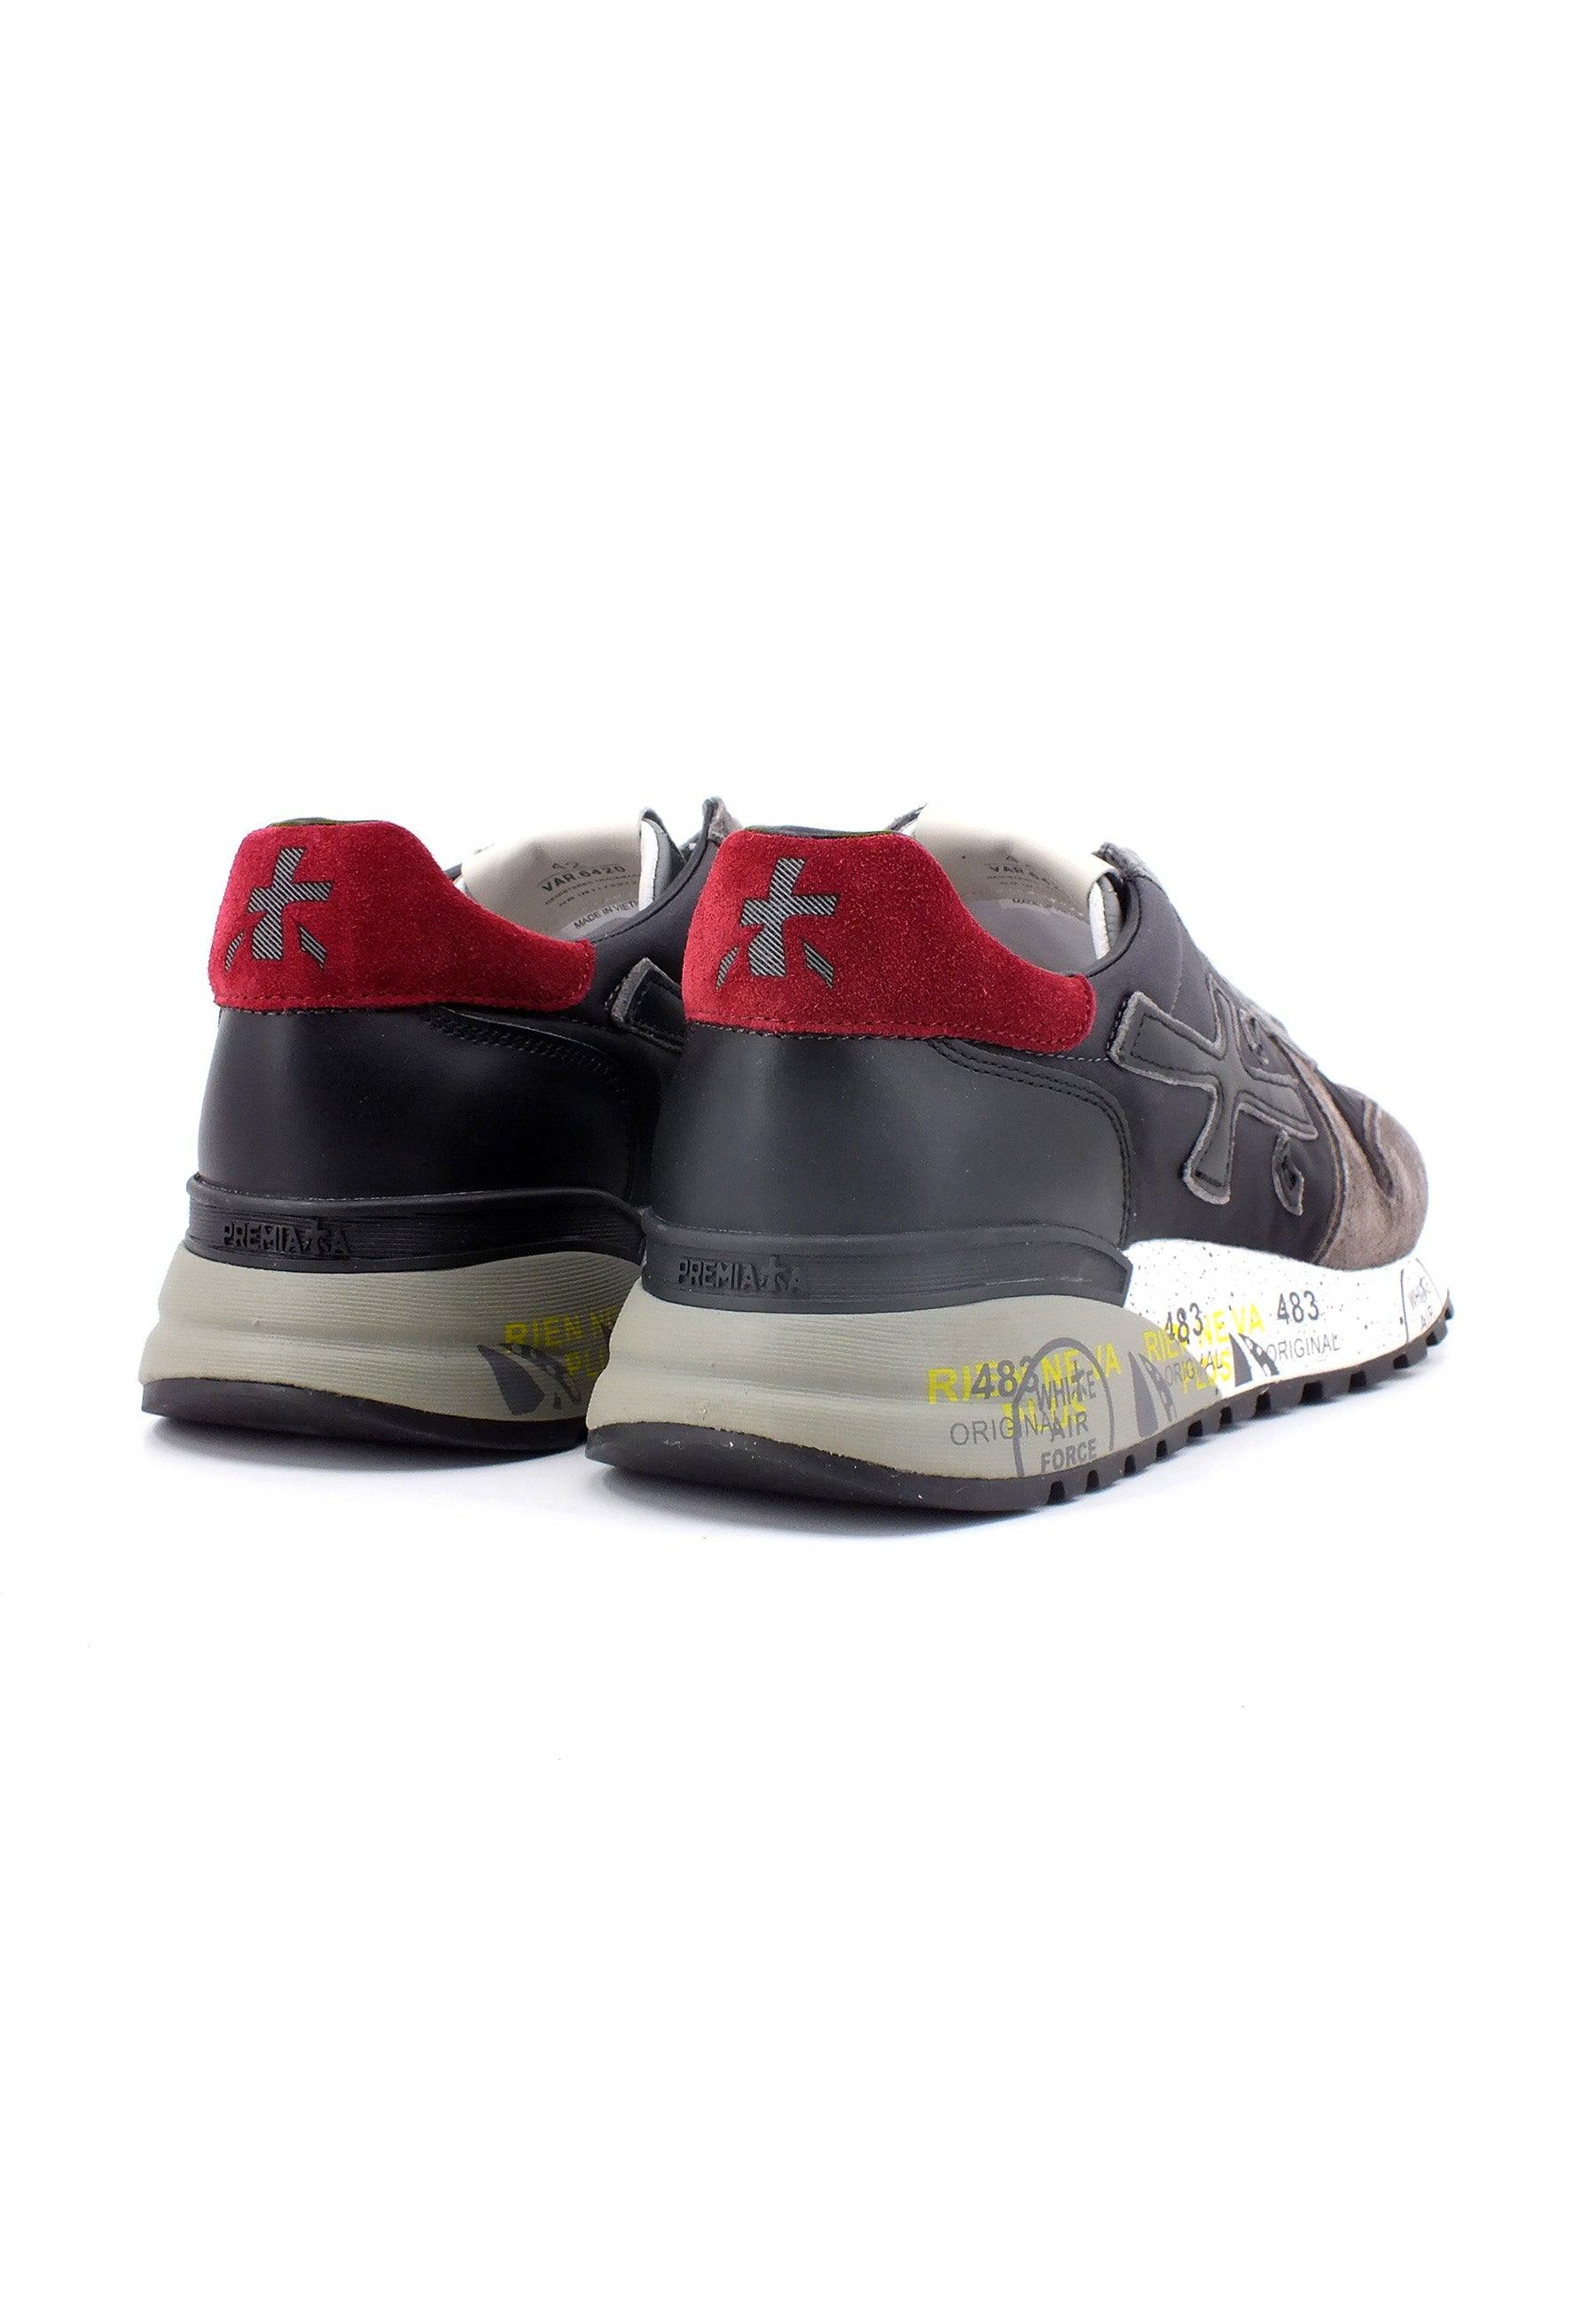 PREMIATA Sneaker Uomo Black Grey MICK-6420 - Sandrini Calzature e Abbigliamento